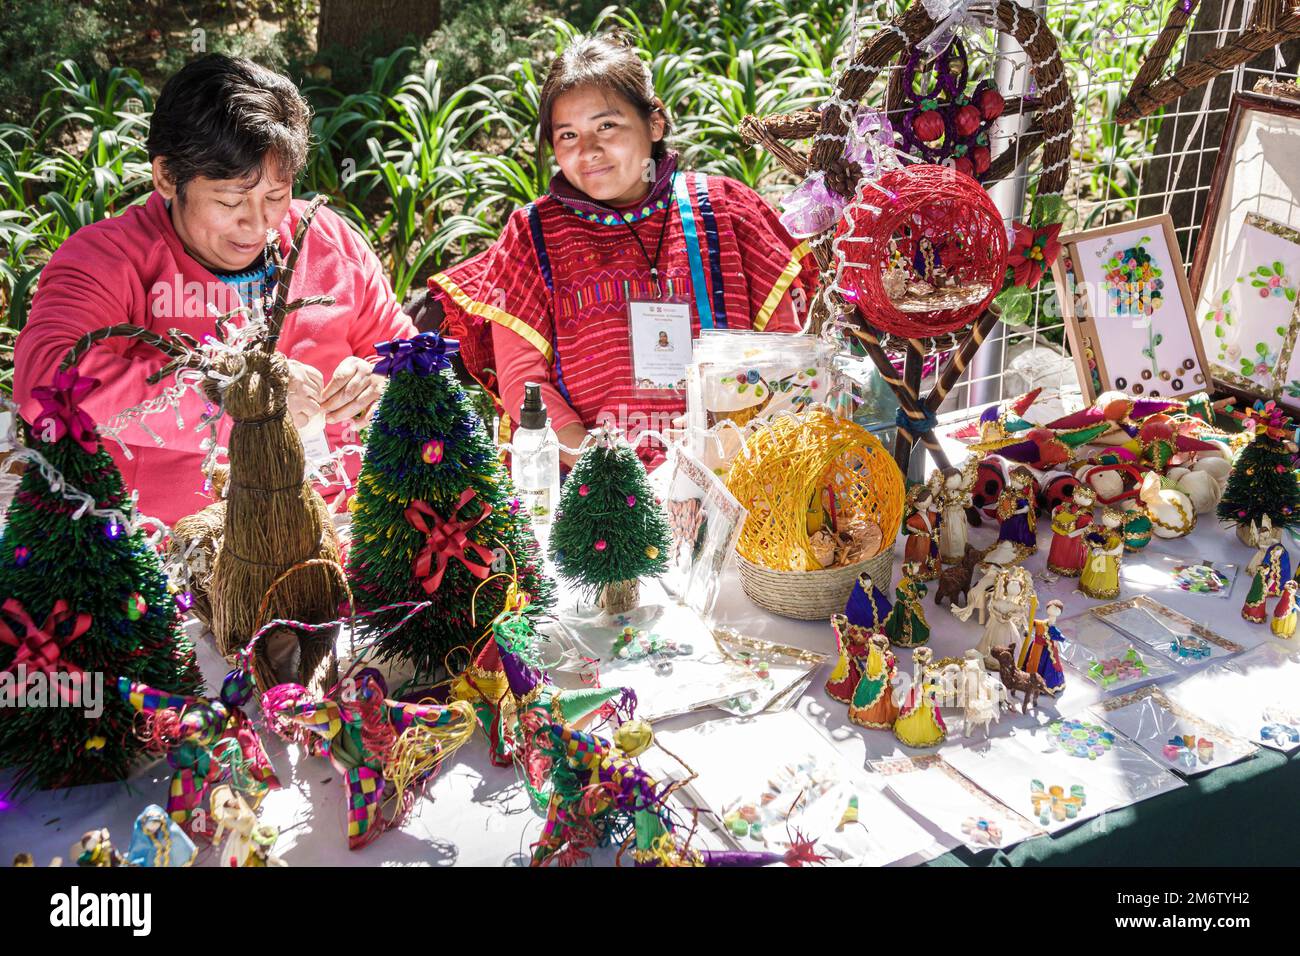 Mexico,Juarez Cuauhtemoc Avenida Paseo de la Reforma,Noël vacances marché artisanal mercado artesanal,miniature arbre de Noël arbres,femme WO Banque D'Images